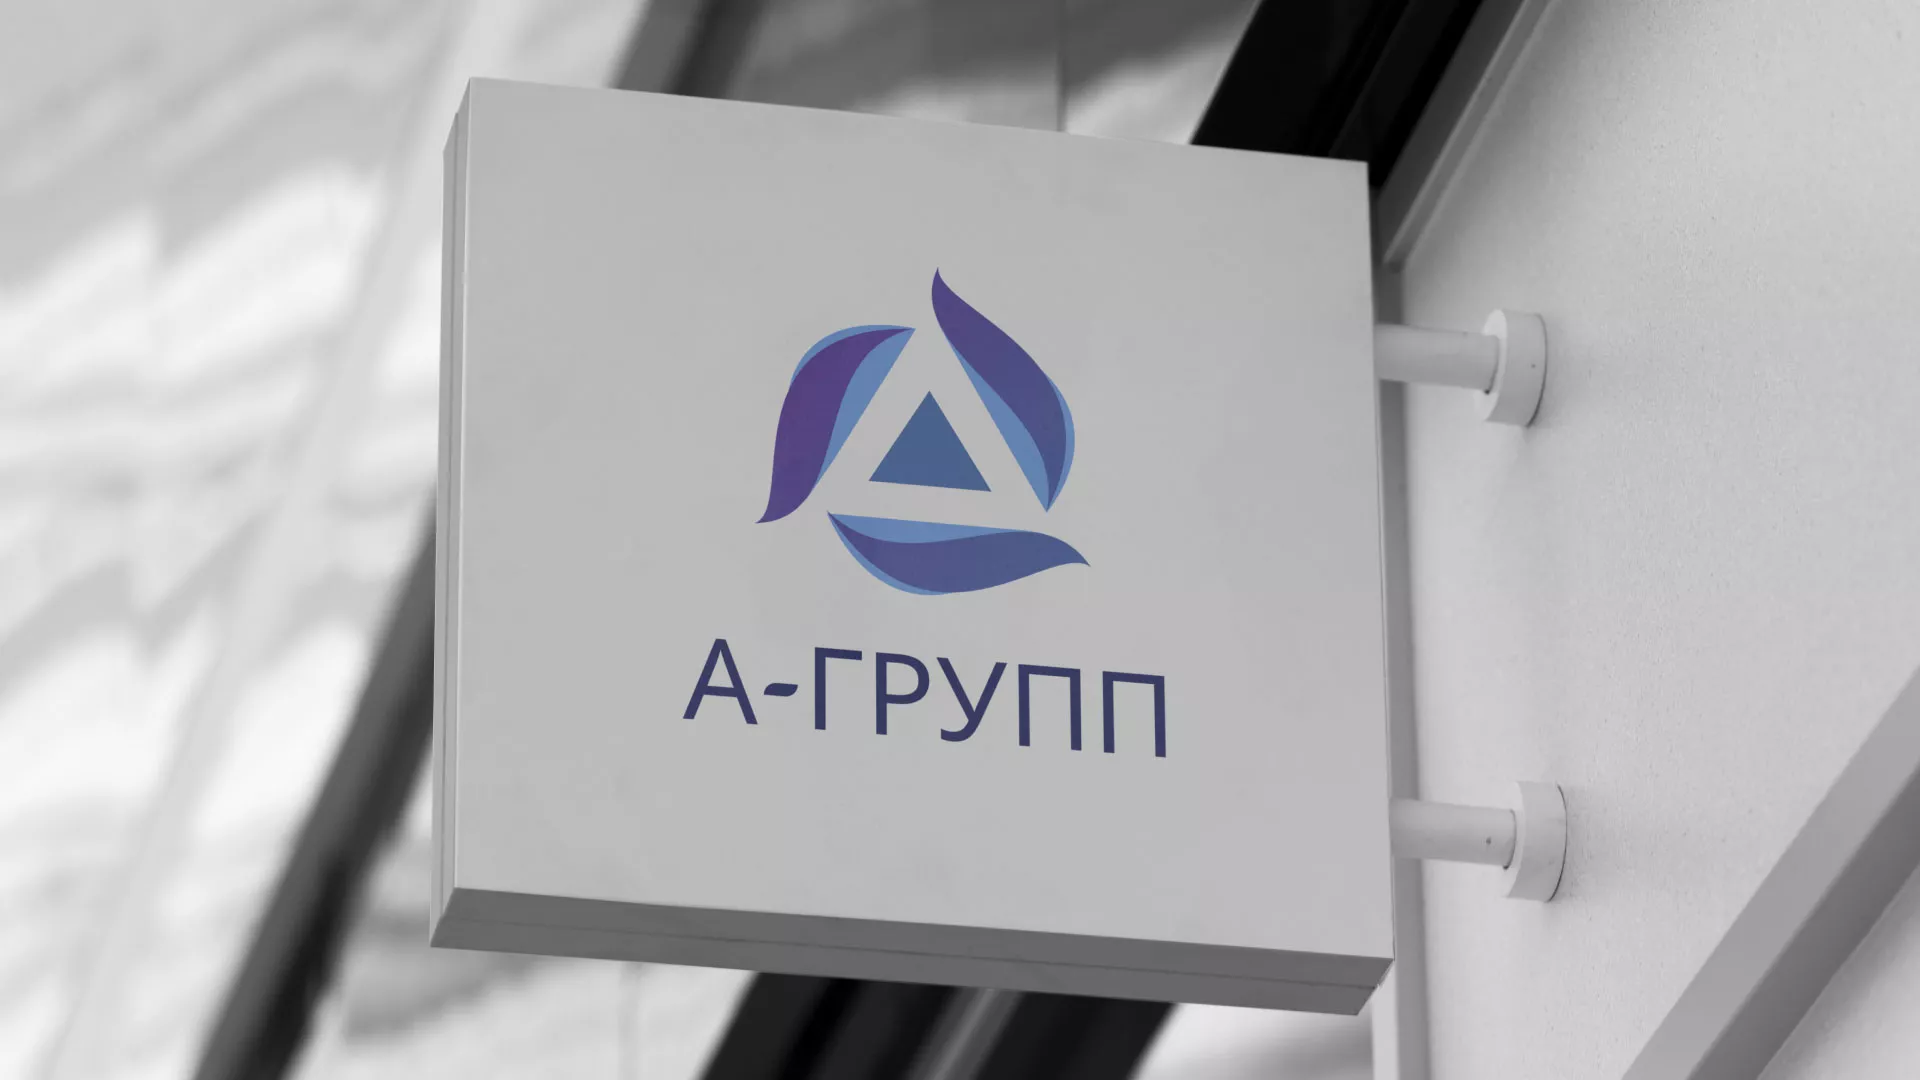 Создание логотипа компании «А-ГРУПП» в Таштаголе